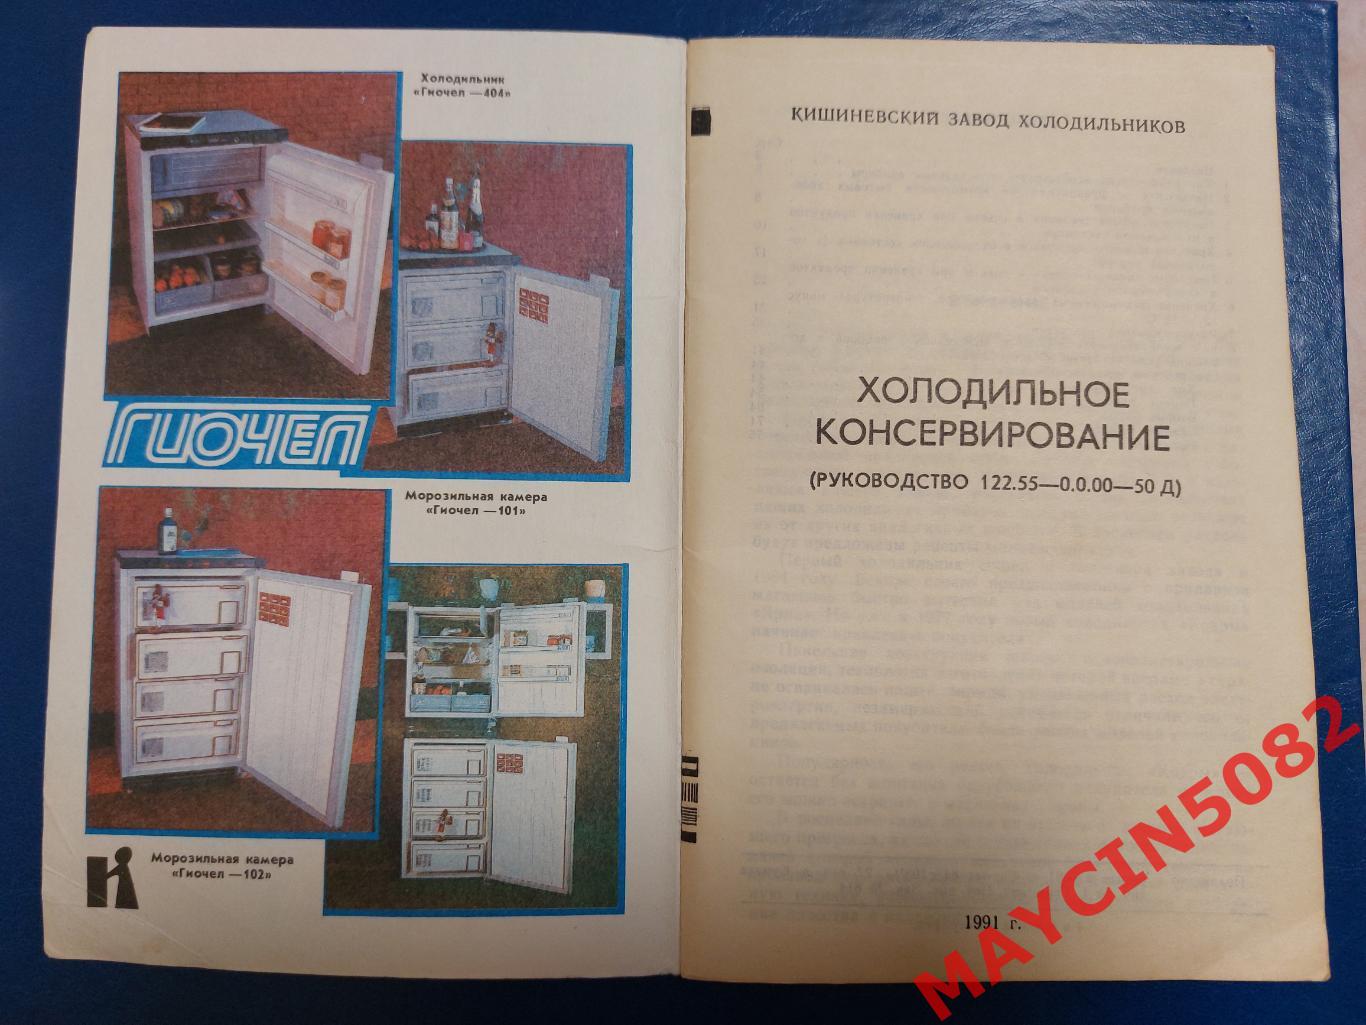 Руководство. Кишиневский завод холодильников. 1991 год. Кишинёв. 1